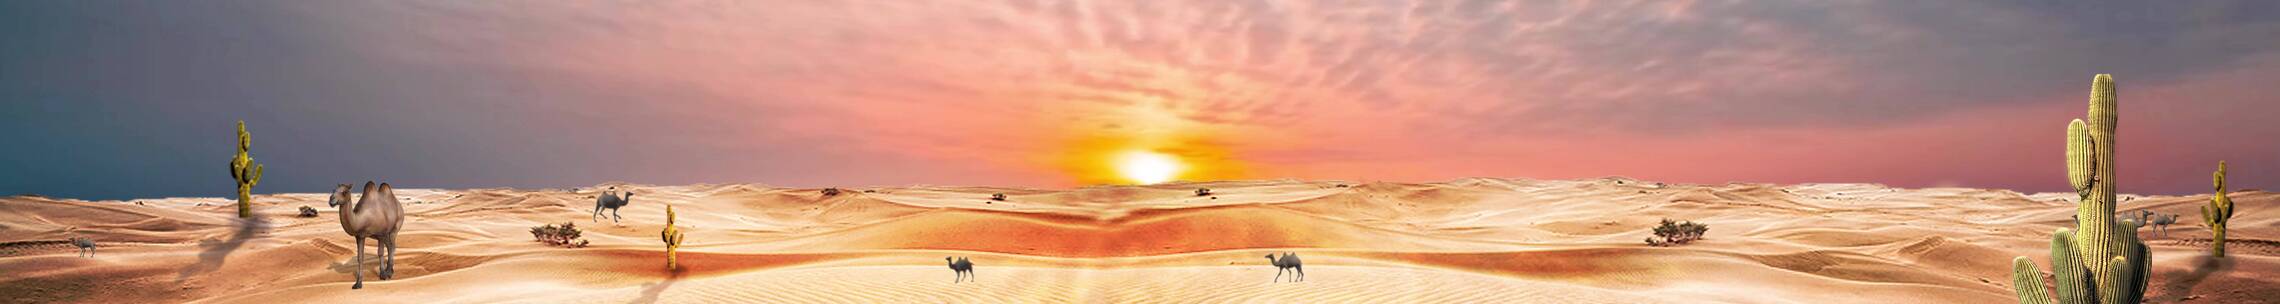 沙漠骆驼 黄昏晚霞 大漠戈壁滩